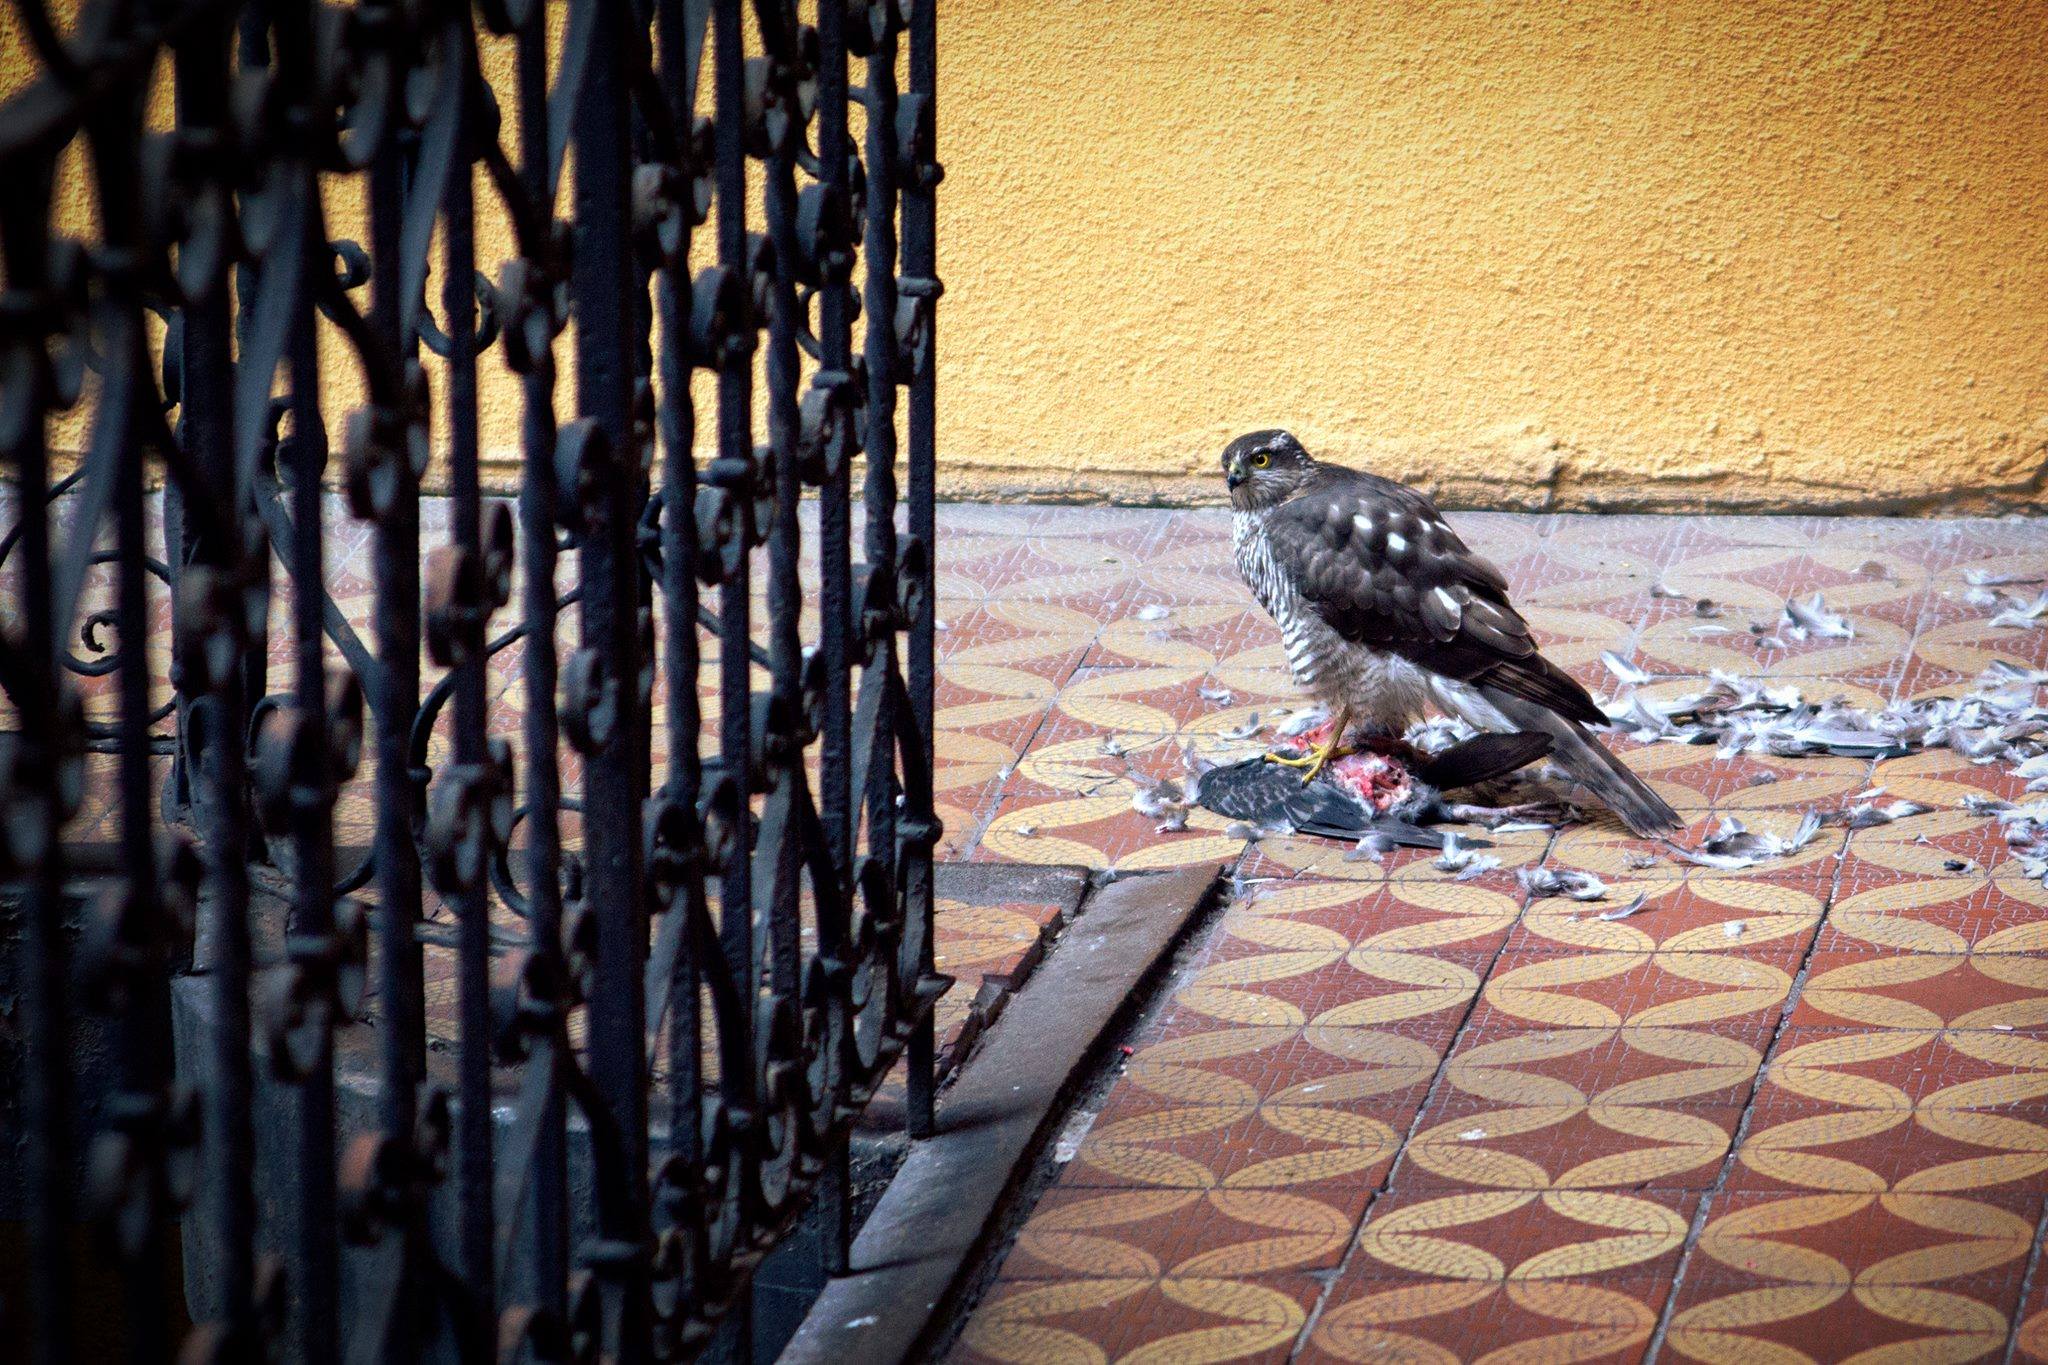 Vérengző madár tép szét egy másikat a Ráday utcában